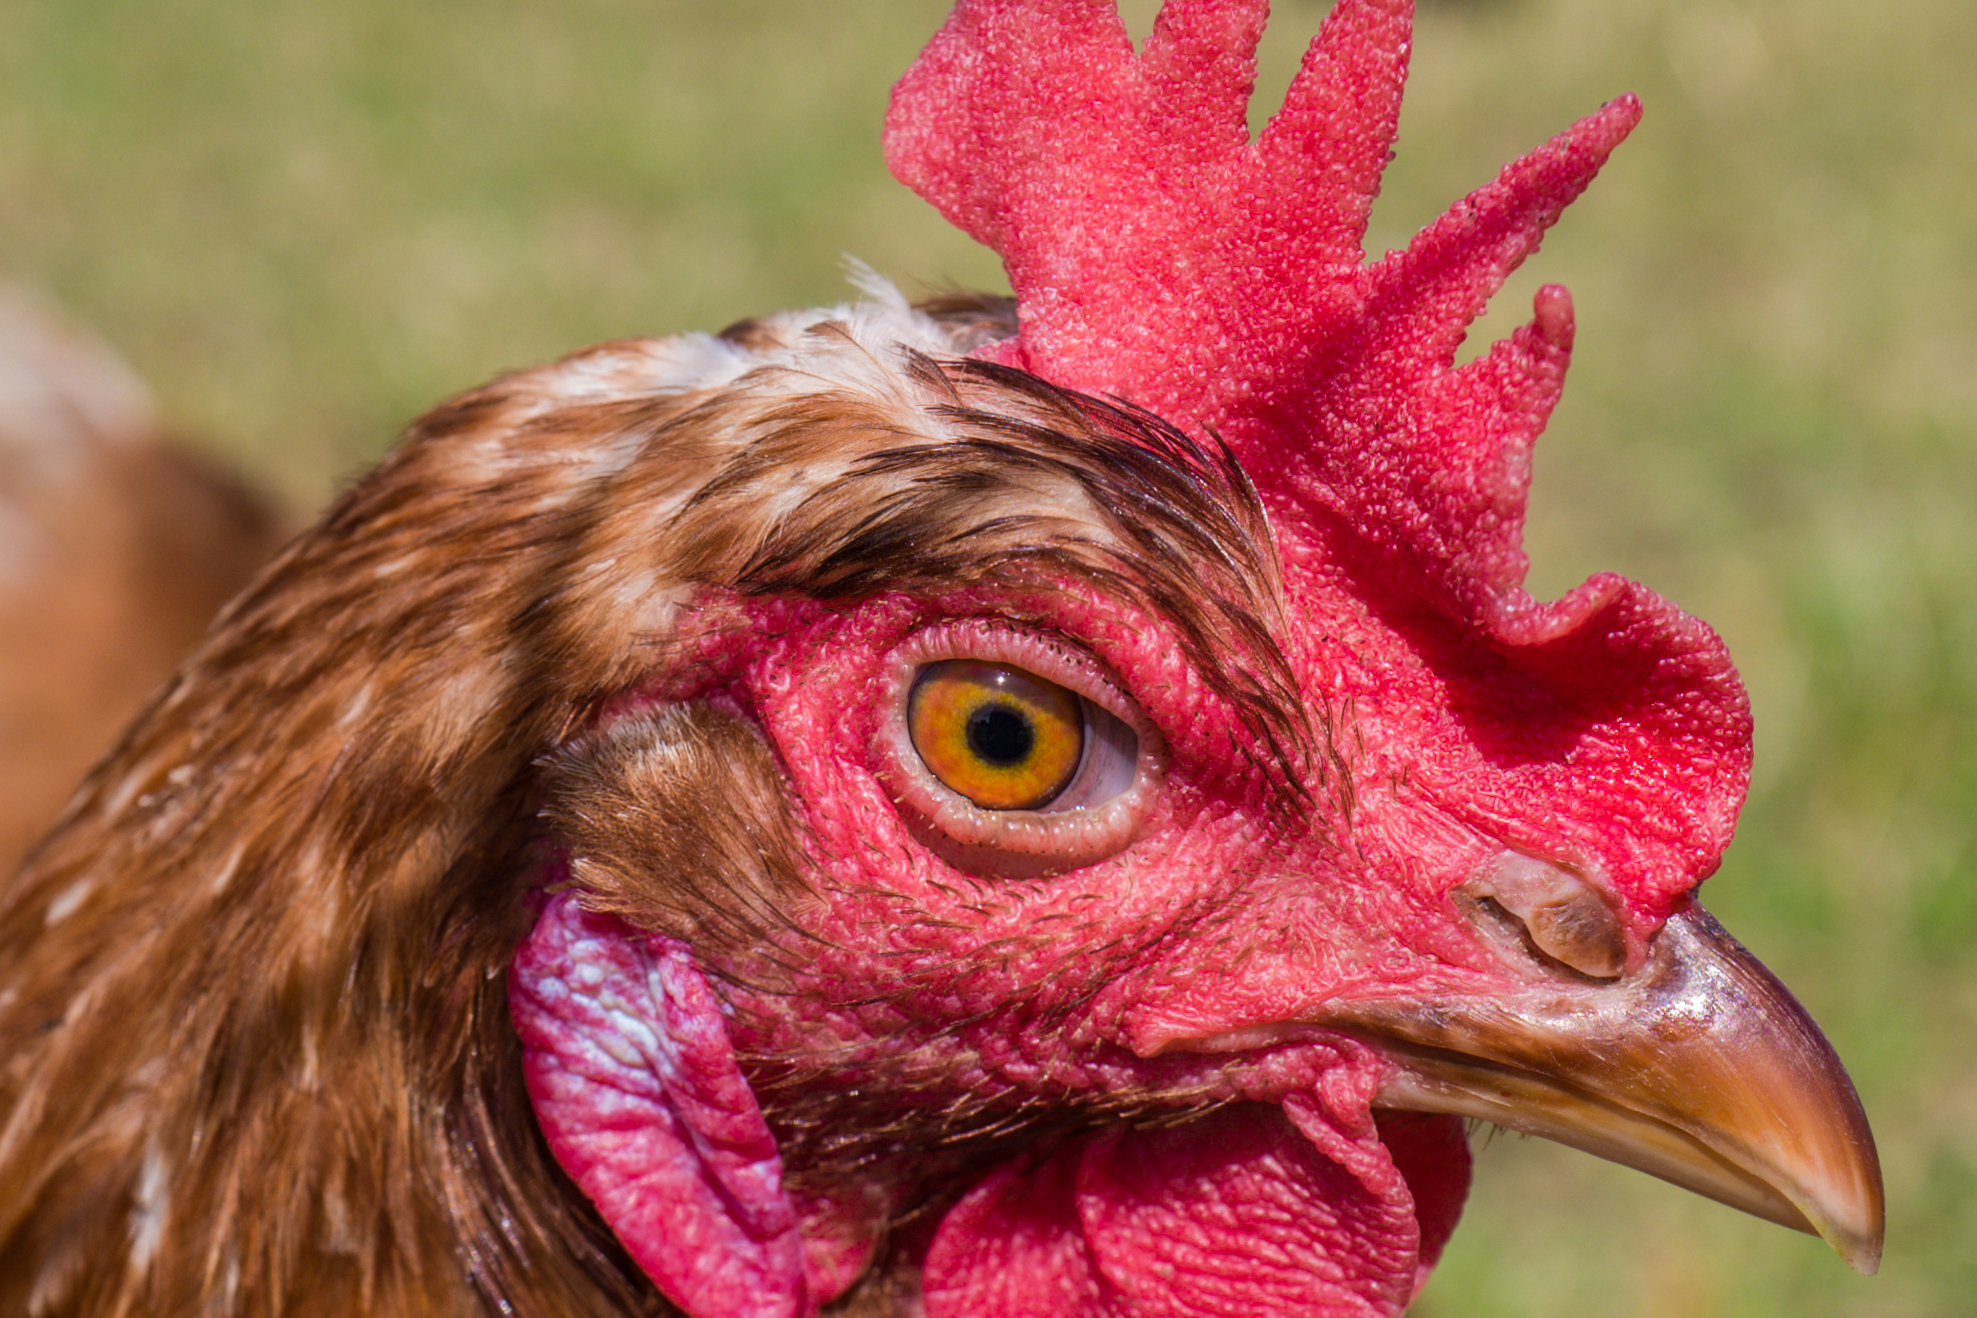 Das Bild zeigt den Kopf eines Huhns in Nahaufnahme. Der Kamm des Huhns ist leuchtend rot und texturiert, mit deutlich sichtbaren Einzelheiten. Das Auge des Huhns ist gelb mit einem schwarzen Pupille, es wirkt aufmerksam und lebendig. Die Federn um das Auge sind braun und weiß, während die Haut um das Auge und am Kamm rötlich ist. Das Auge ist Orangefarbig. Der Hintergrund des Bildes ist unscharf, was den Fokus auf den Kopf des Huhns lenkt. Makroaufnahme mit einer Leica Kamera.